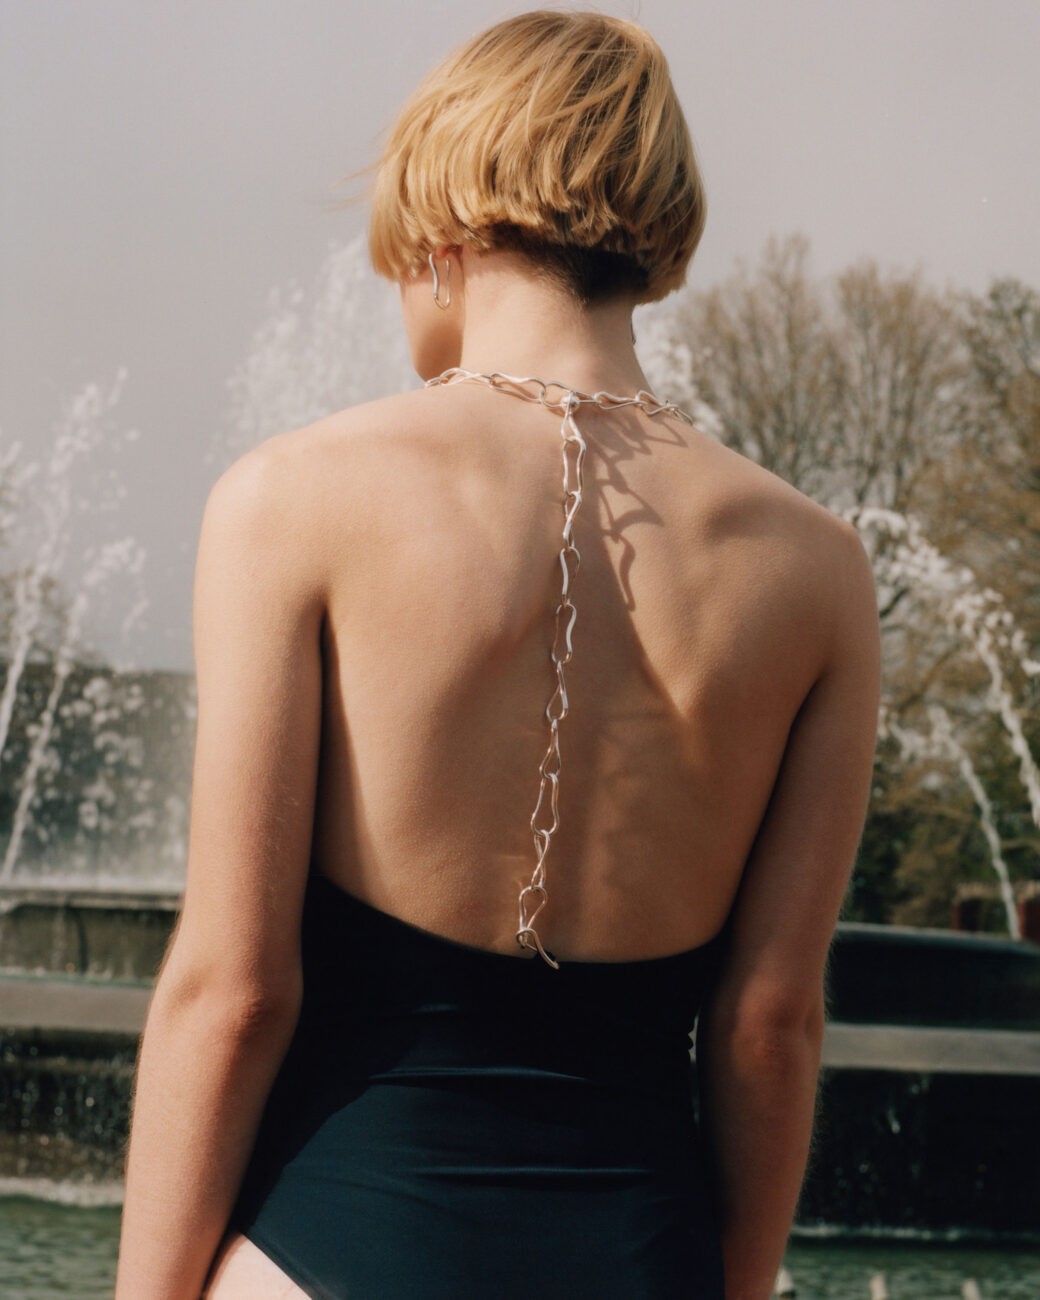 jewellery | swimsuit | woman | blonde | water